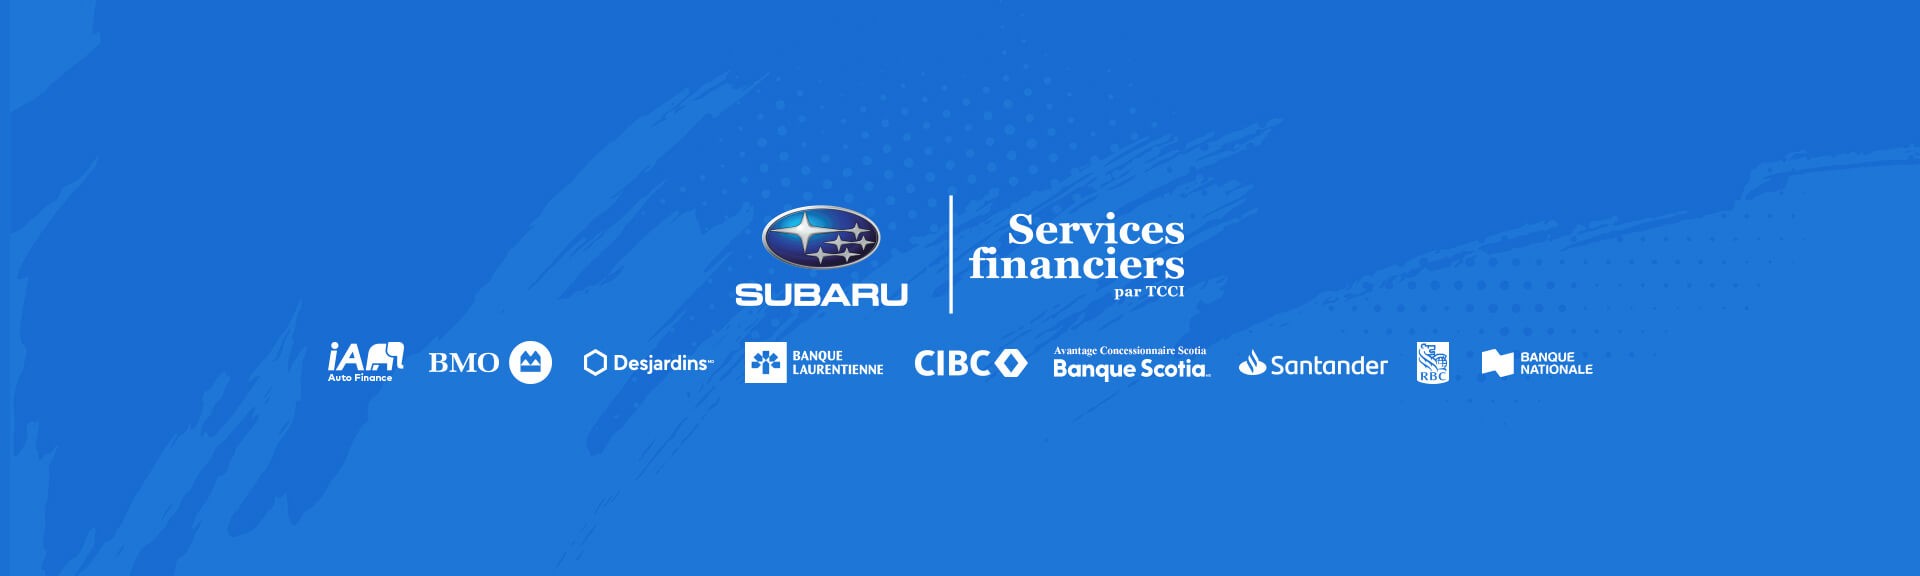 Subaru Financial Services